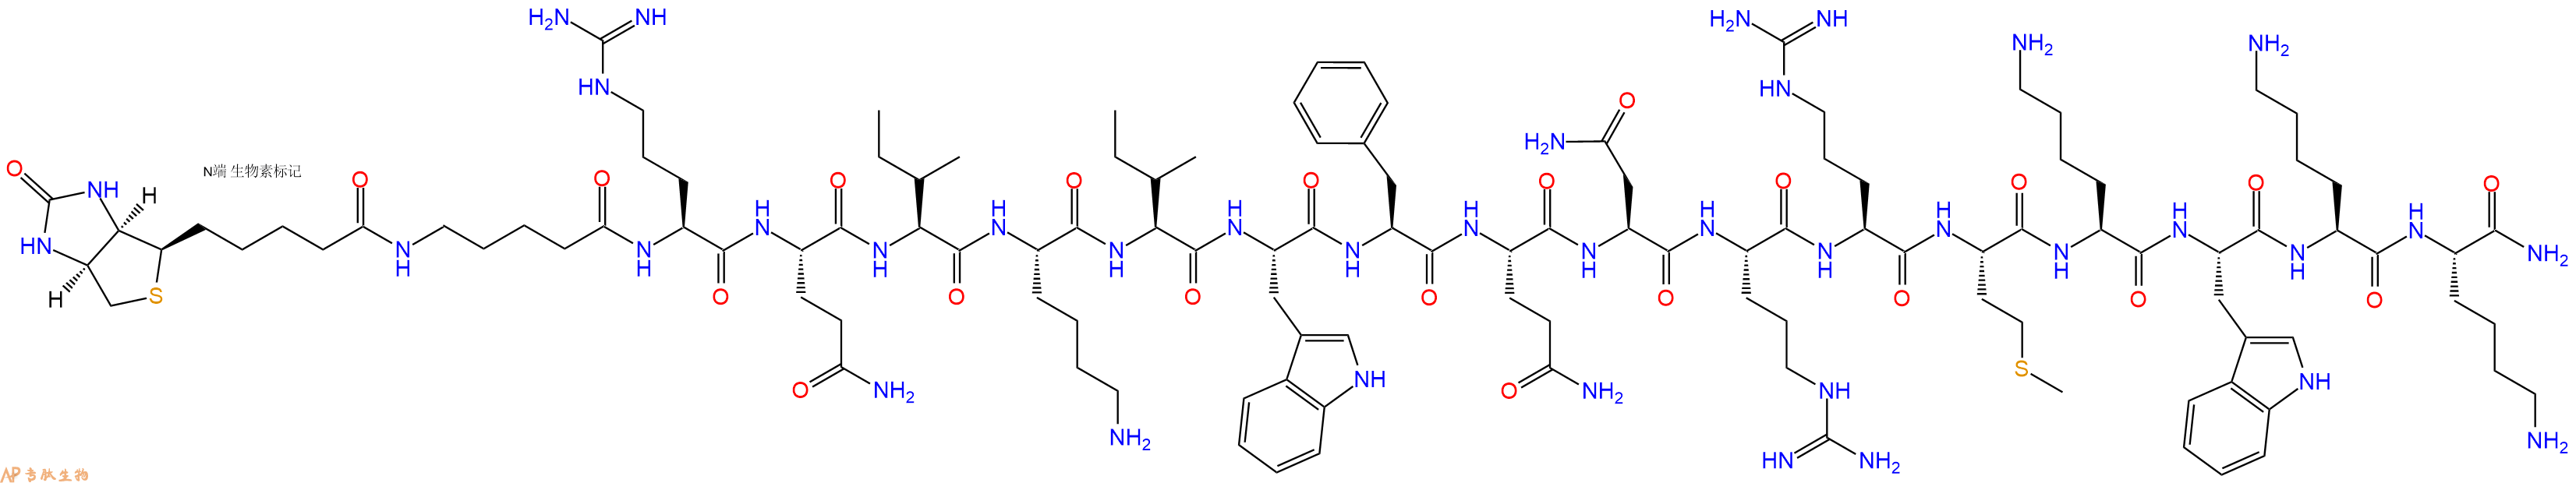 专肽生物产品生物素标记肽Biotin-Ava-RQIKIWFQNRRMKWKK-NH2179764-32-0